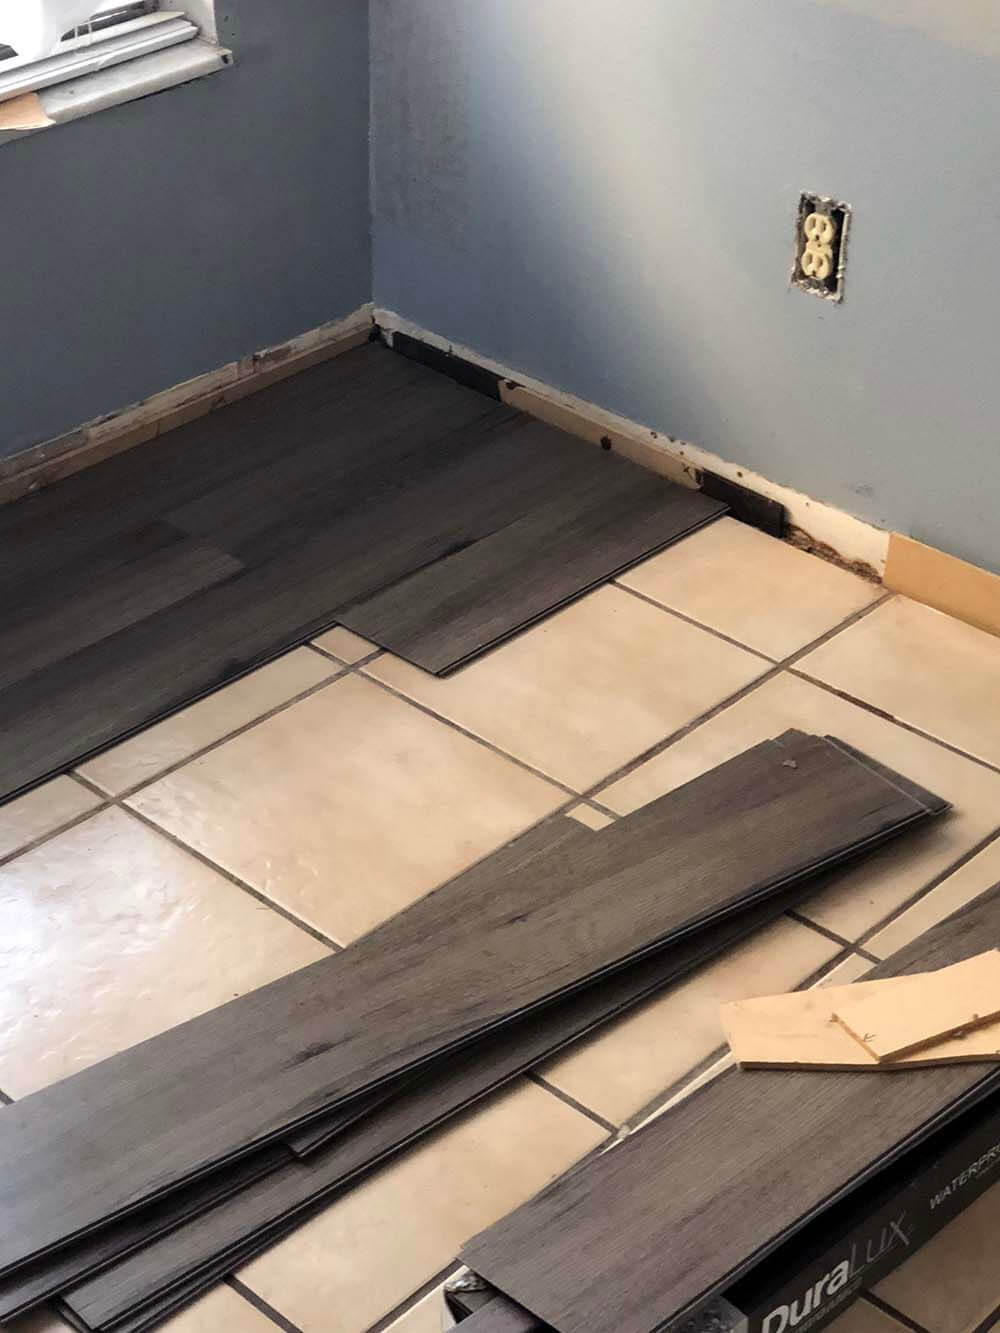 LVT-flooring install over ceramic tile